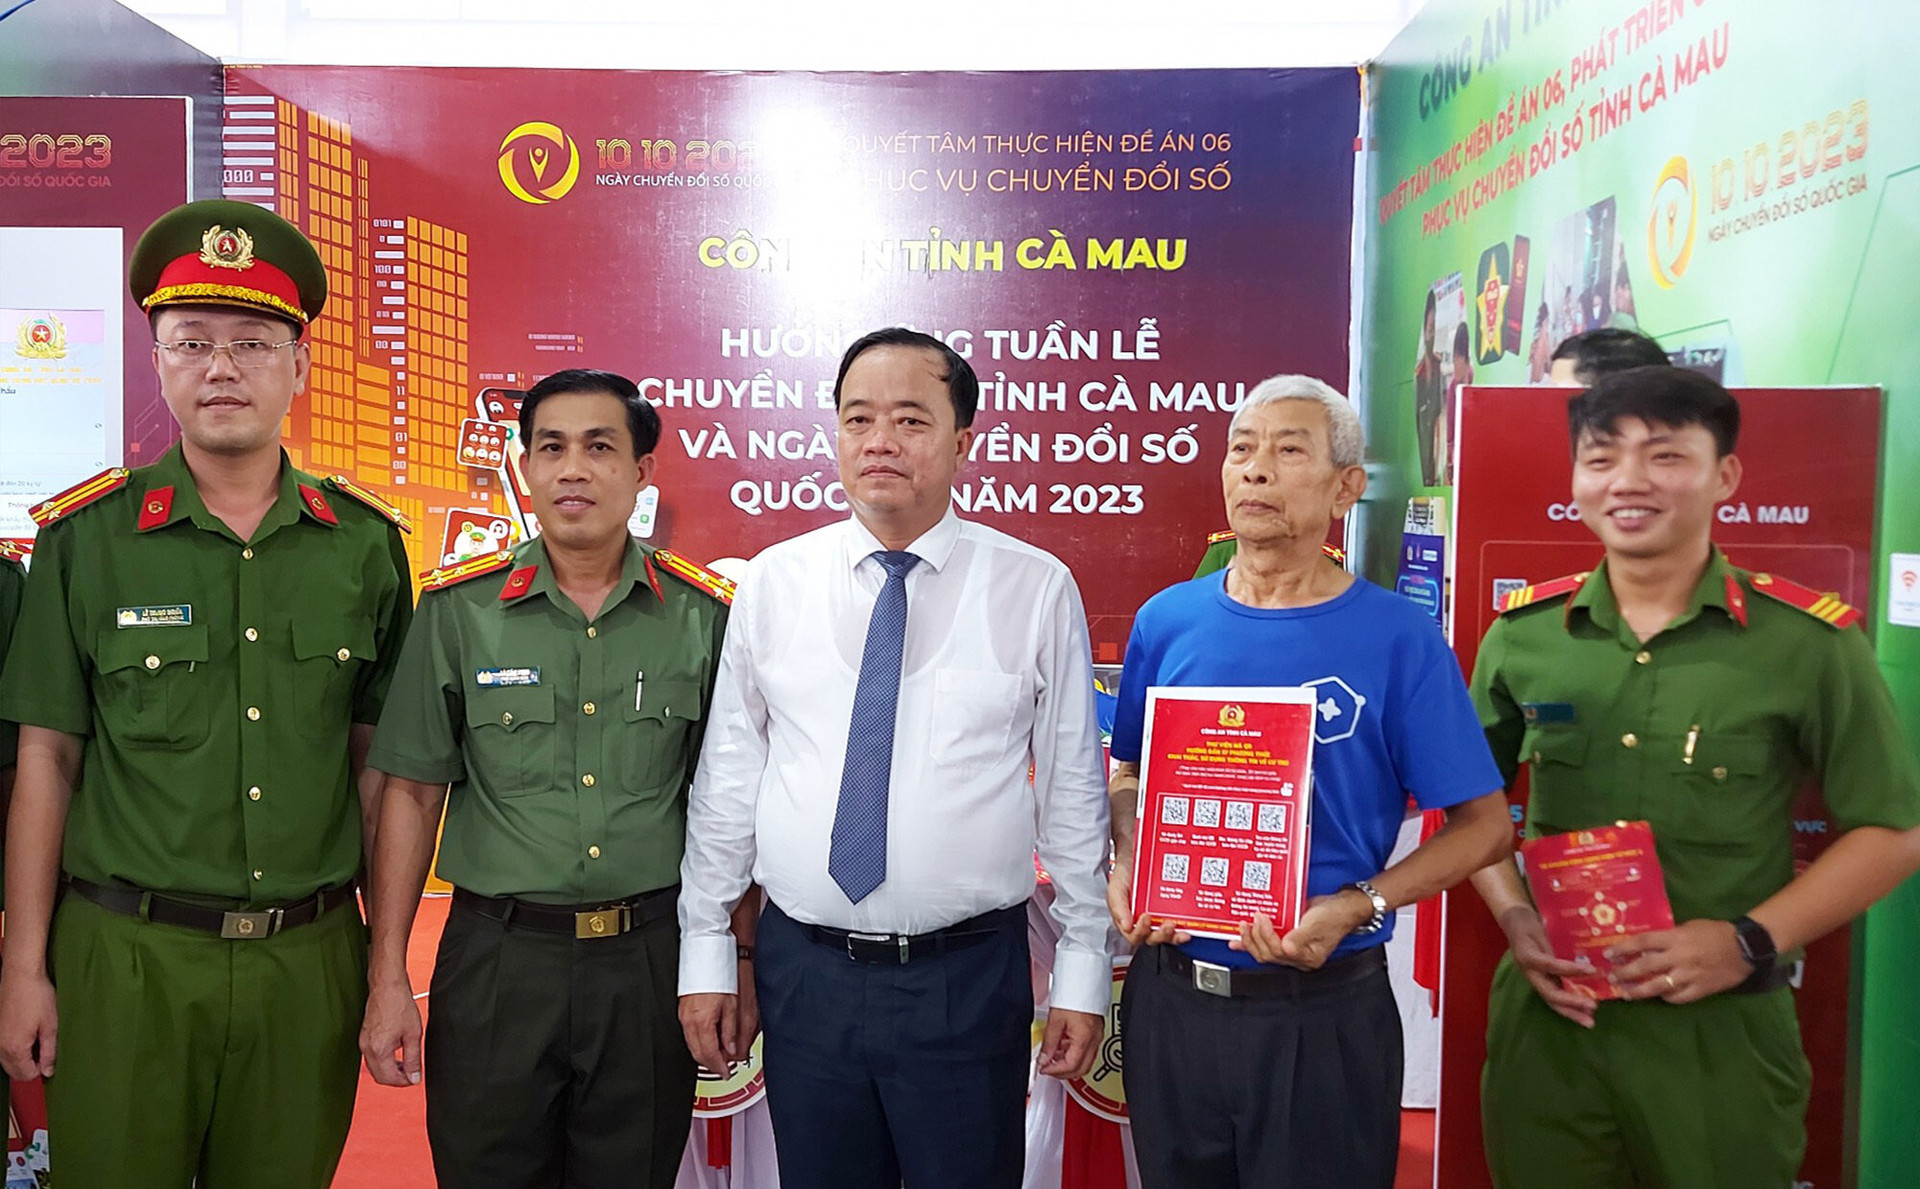 Chủ tịch UBND tỉnh Cà Mau Huỳnh Quốc Việt (giữa) chụp hình lưu niệm tại các gian hàng trưng bày sản phẩm chuyển đổi số chiều 9/10.